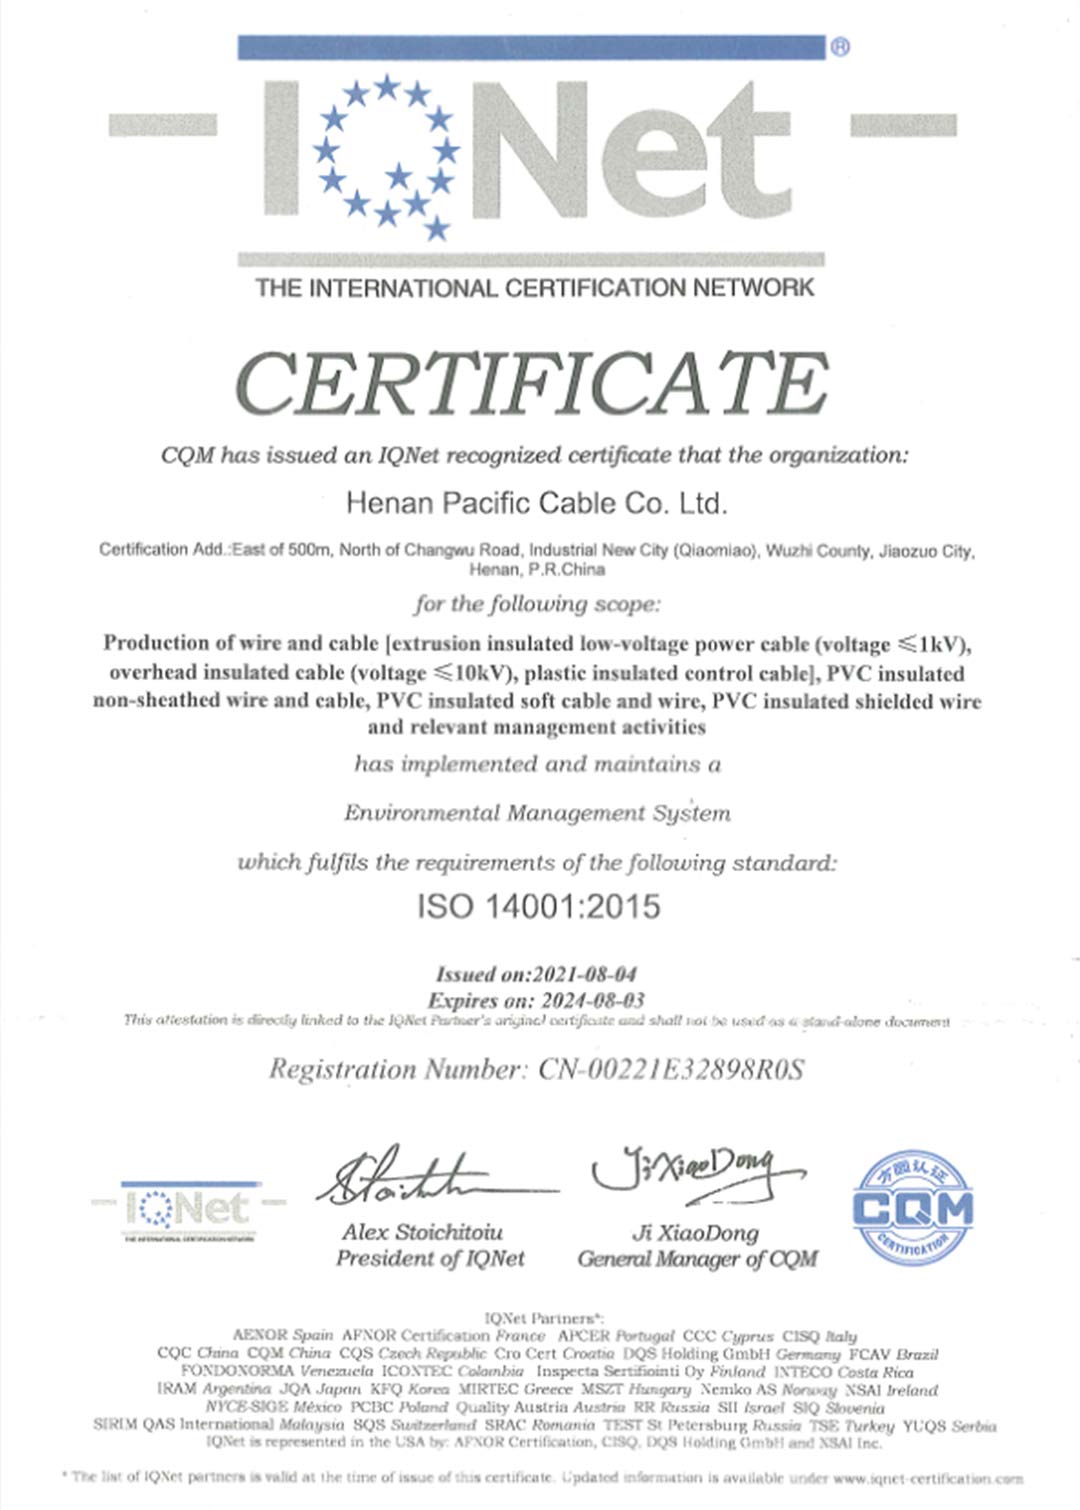 环境管理体系认证证书ISO 14001:2015